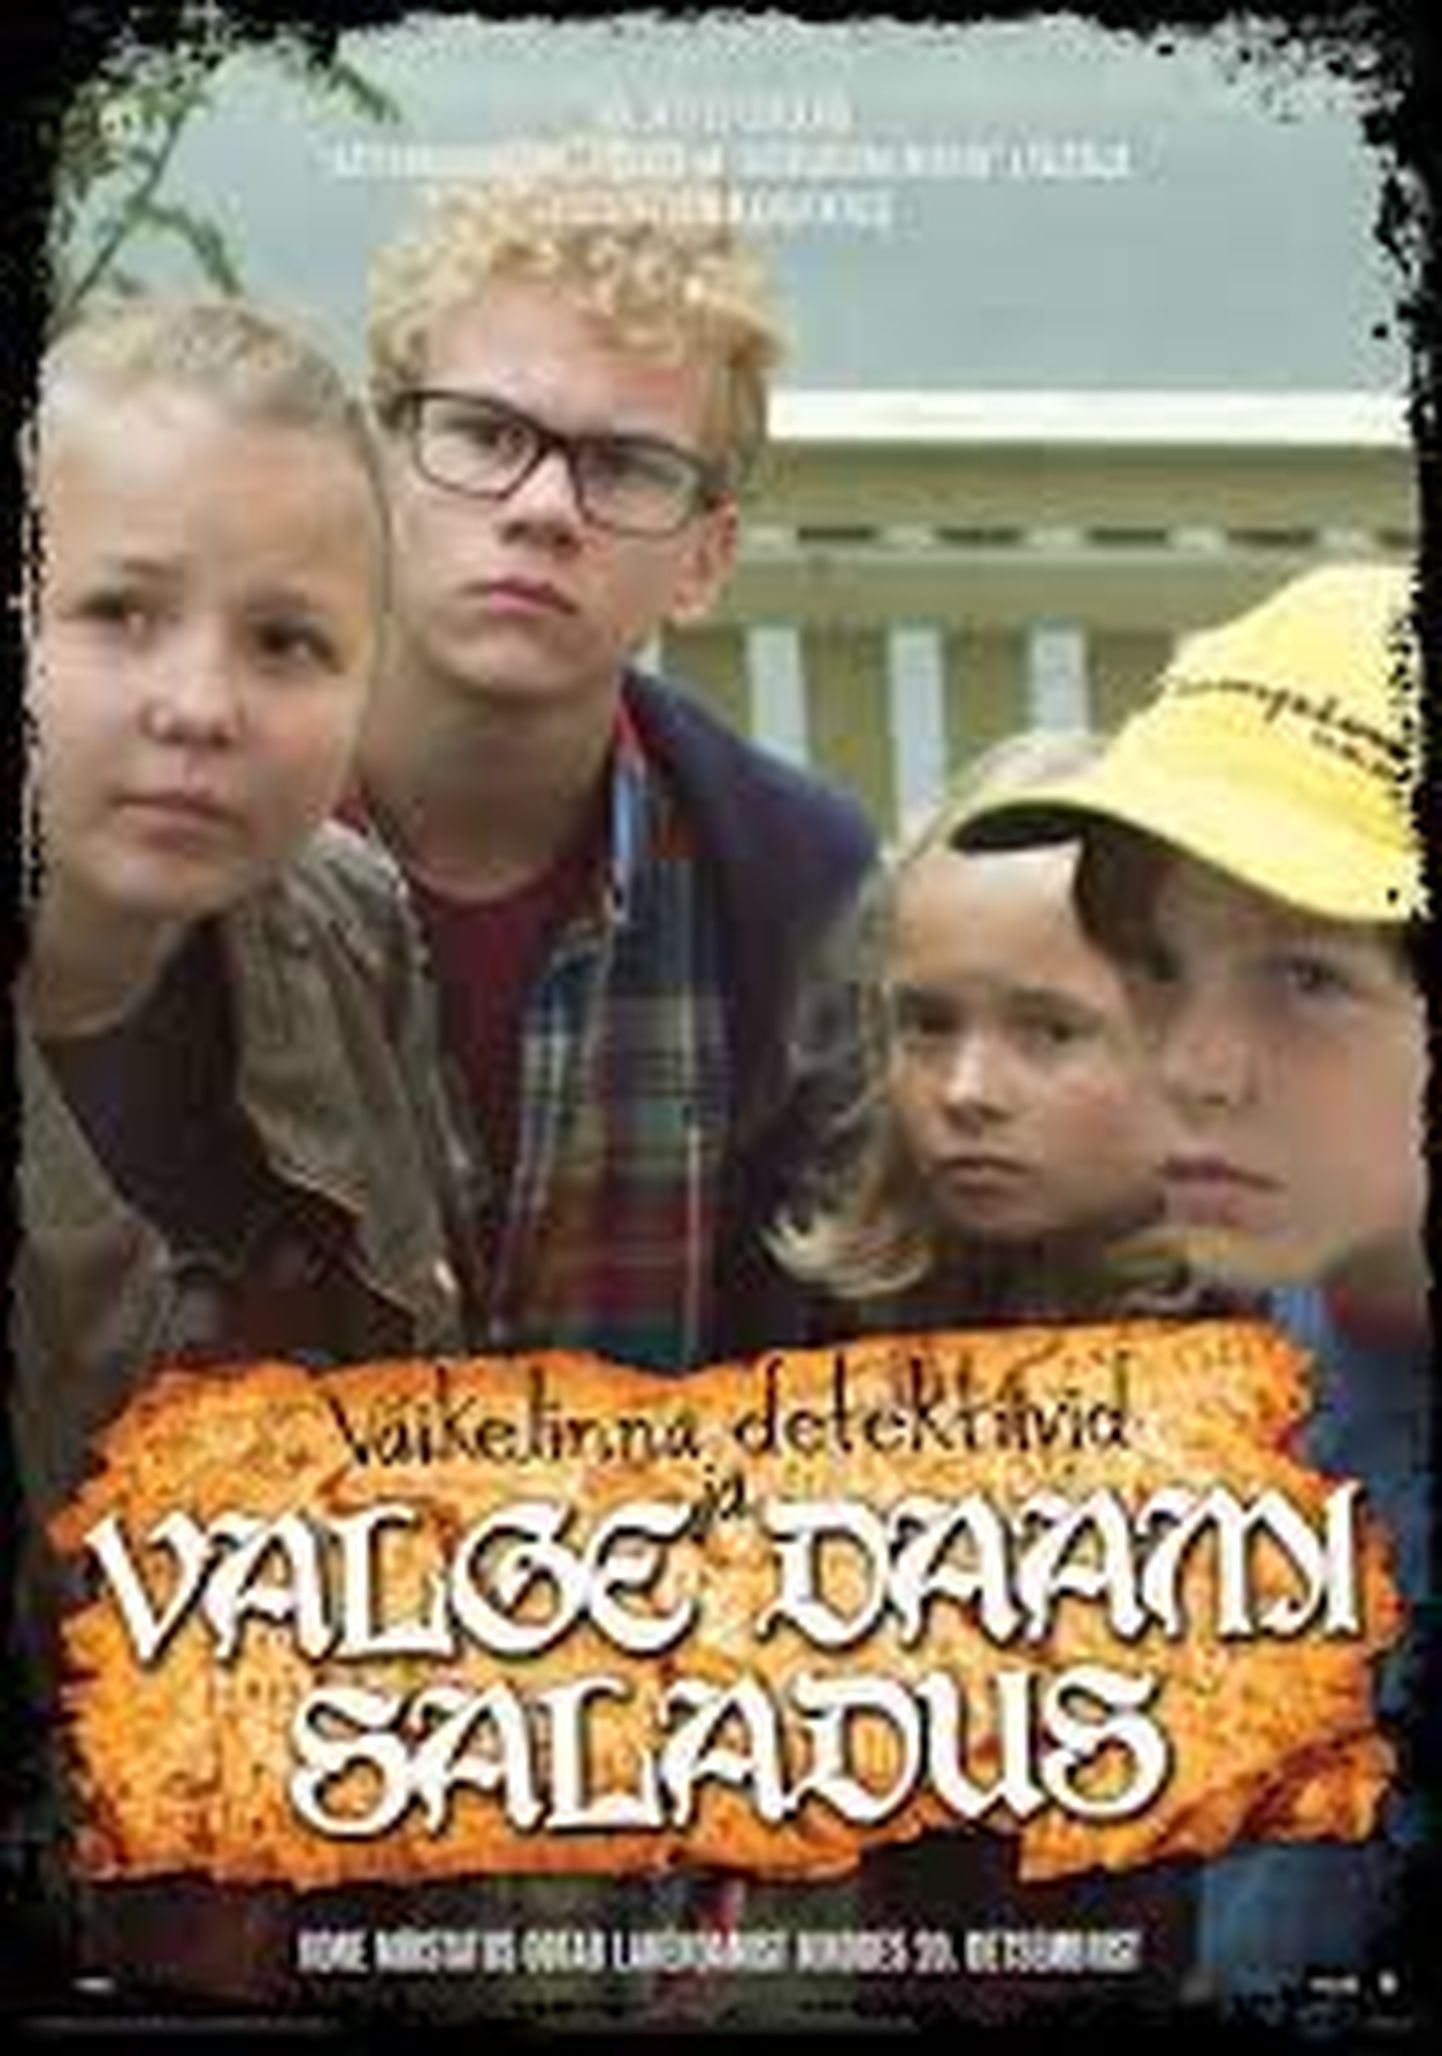 Filmi "Väikelinna detektiivid ja Valge Daami saladus" plakat.